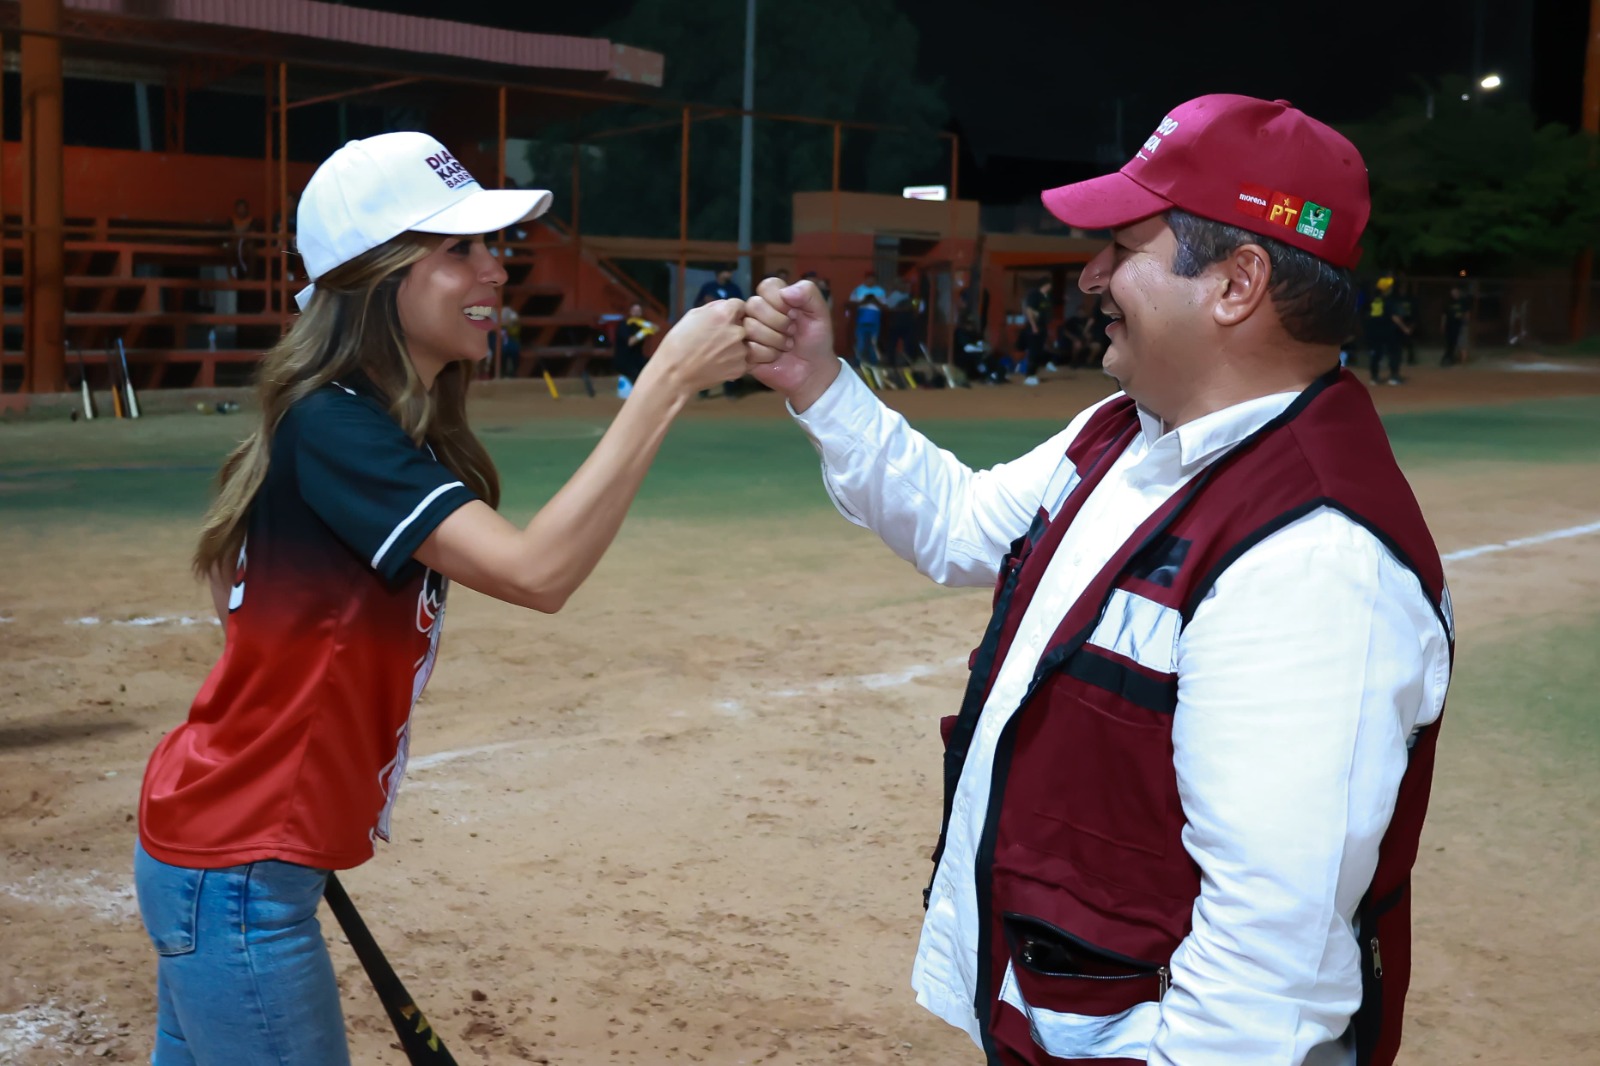 Promoveremos más apoyos al deporte competitivo como actividad recreativa para las familias: Diana Karina Barreras